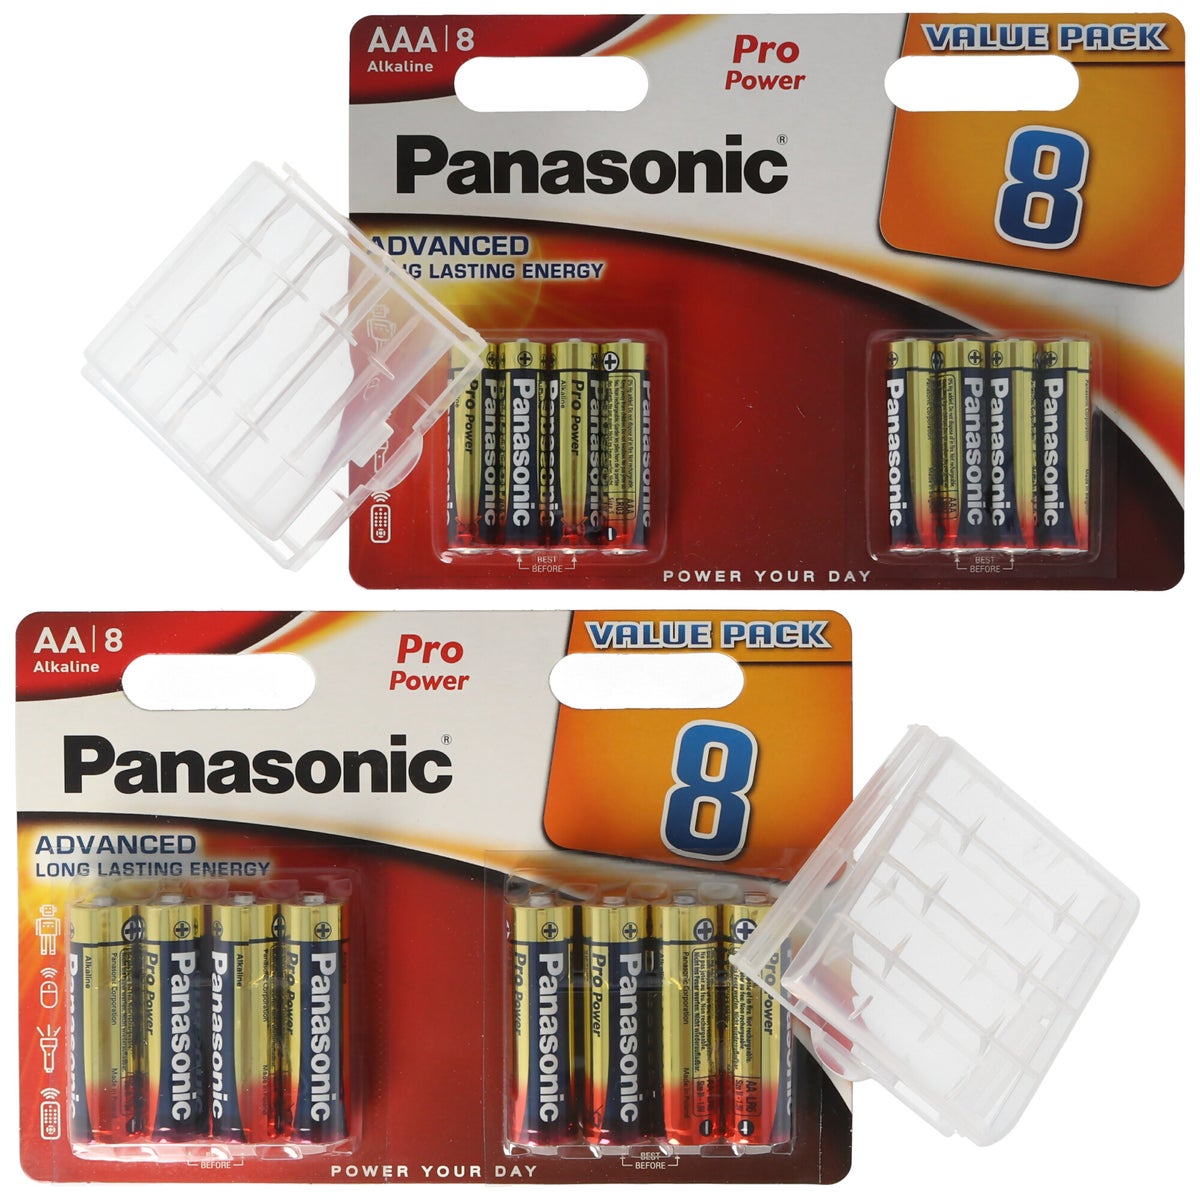 ALL YOU NEED-Paket mit 8x Panasonic AA Batterien, 8x Panasonic AAA Batterien und 2x Aufbewahrungsboxen